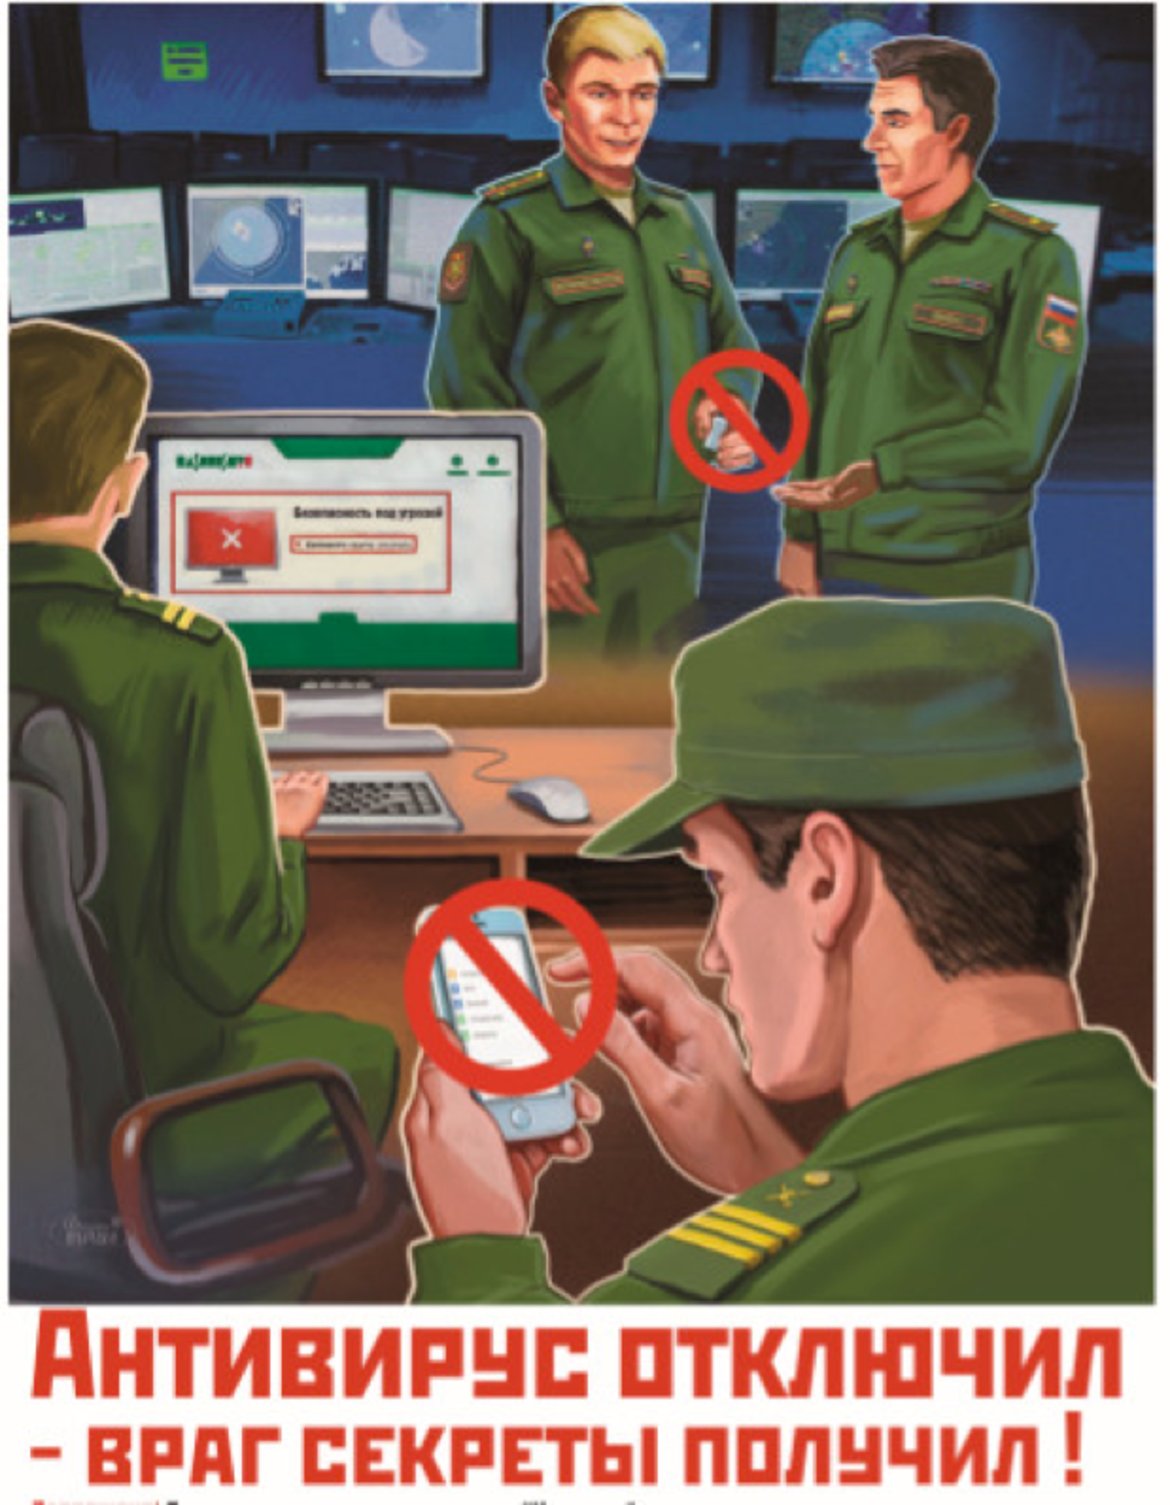 11. "Ако деактивираш антивирусния софтуер - раздаваш тайни на врага!"

Тук се набляга на това да не се изключва антивирусният софтуер, който предпазва личните и служенби устройства от хактерски атаки. Един интересен детайл в плаката - предпочитаният антивирусен софтуер, използван от войниците, е Kaspersky Labs, която е руска компания, която наскоро прекрати всичките си договори с правителството на САЩ заради подозрения в шпионаж.